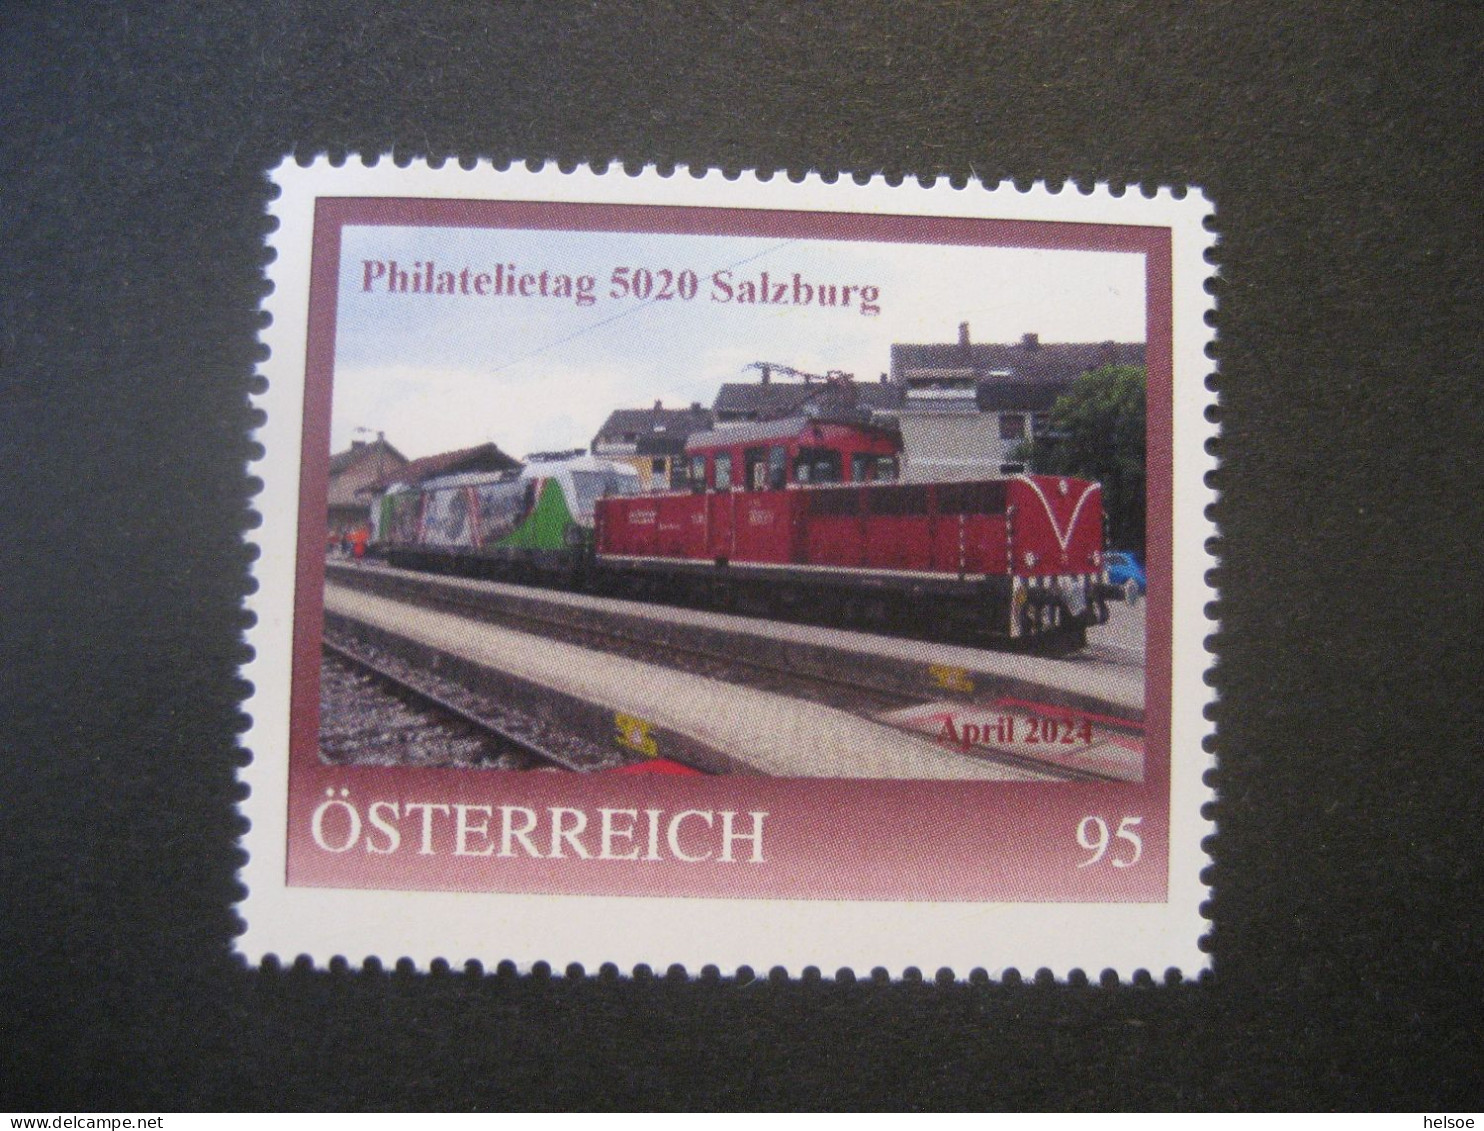 Österreich- 5020 Salzburg 8148553, Philatelietag Ungebraucht - Personalisierte Briefmarken